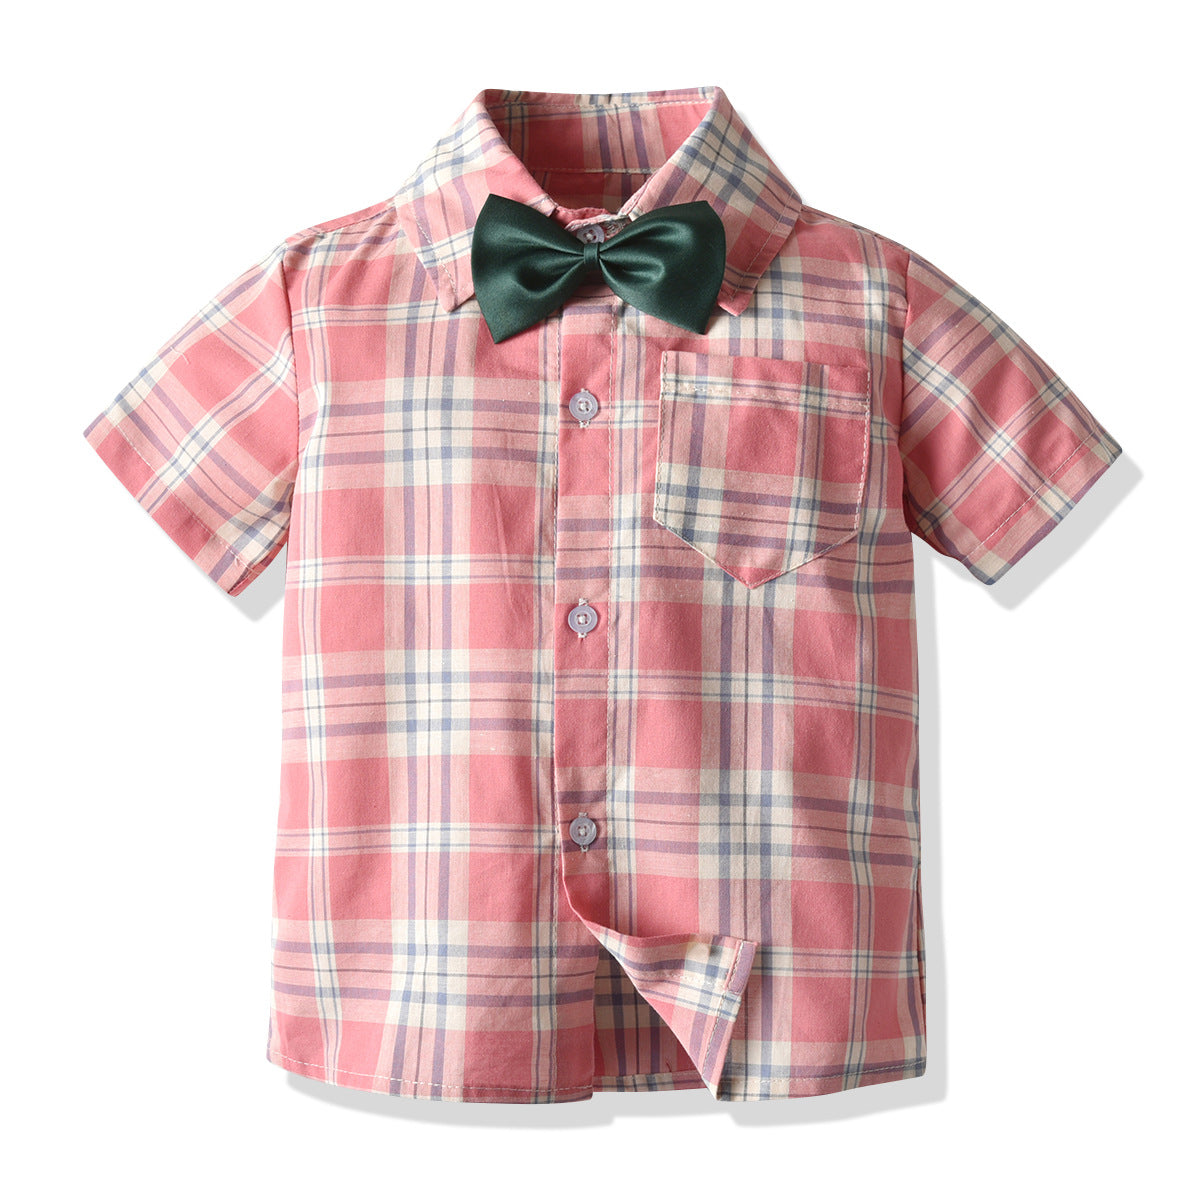 Kid Baby Boy Shorts Bow Plaid Shirt Fashion Sets